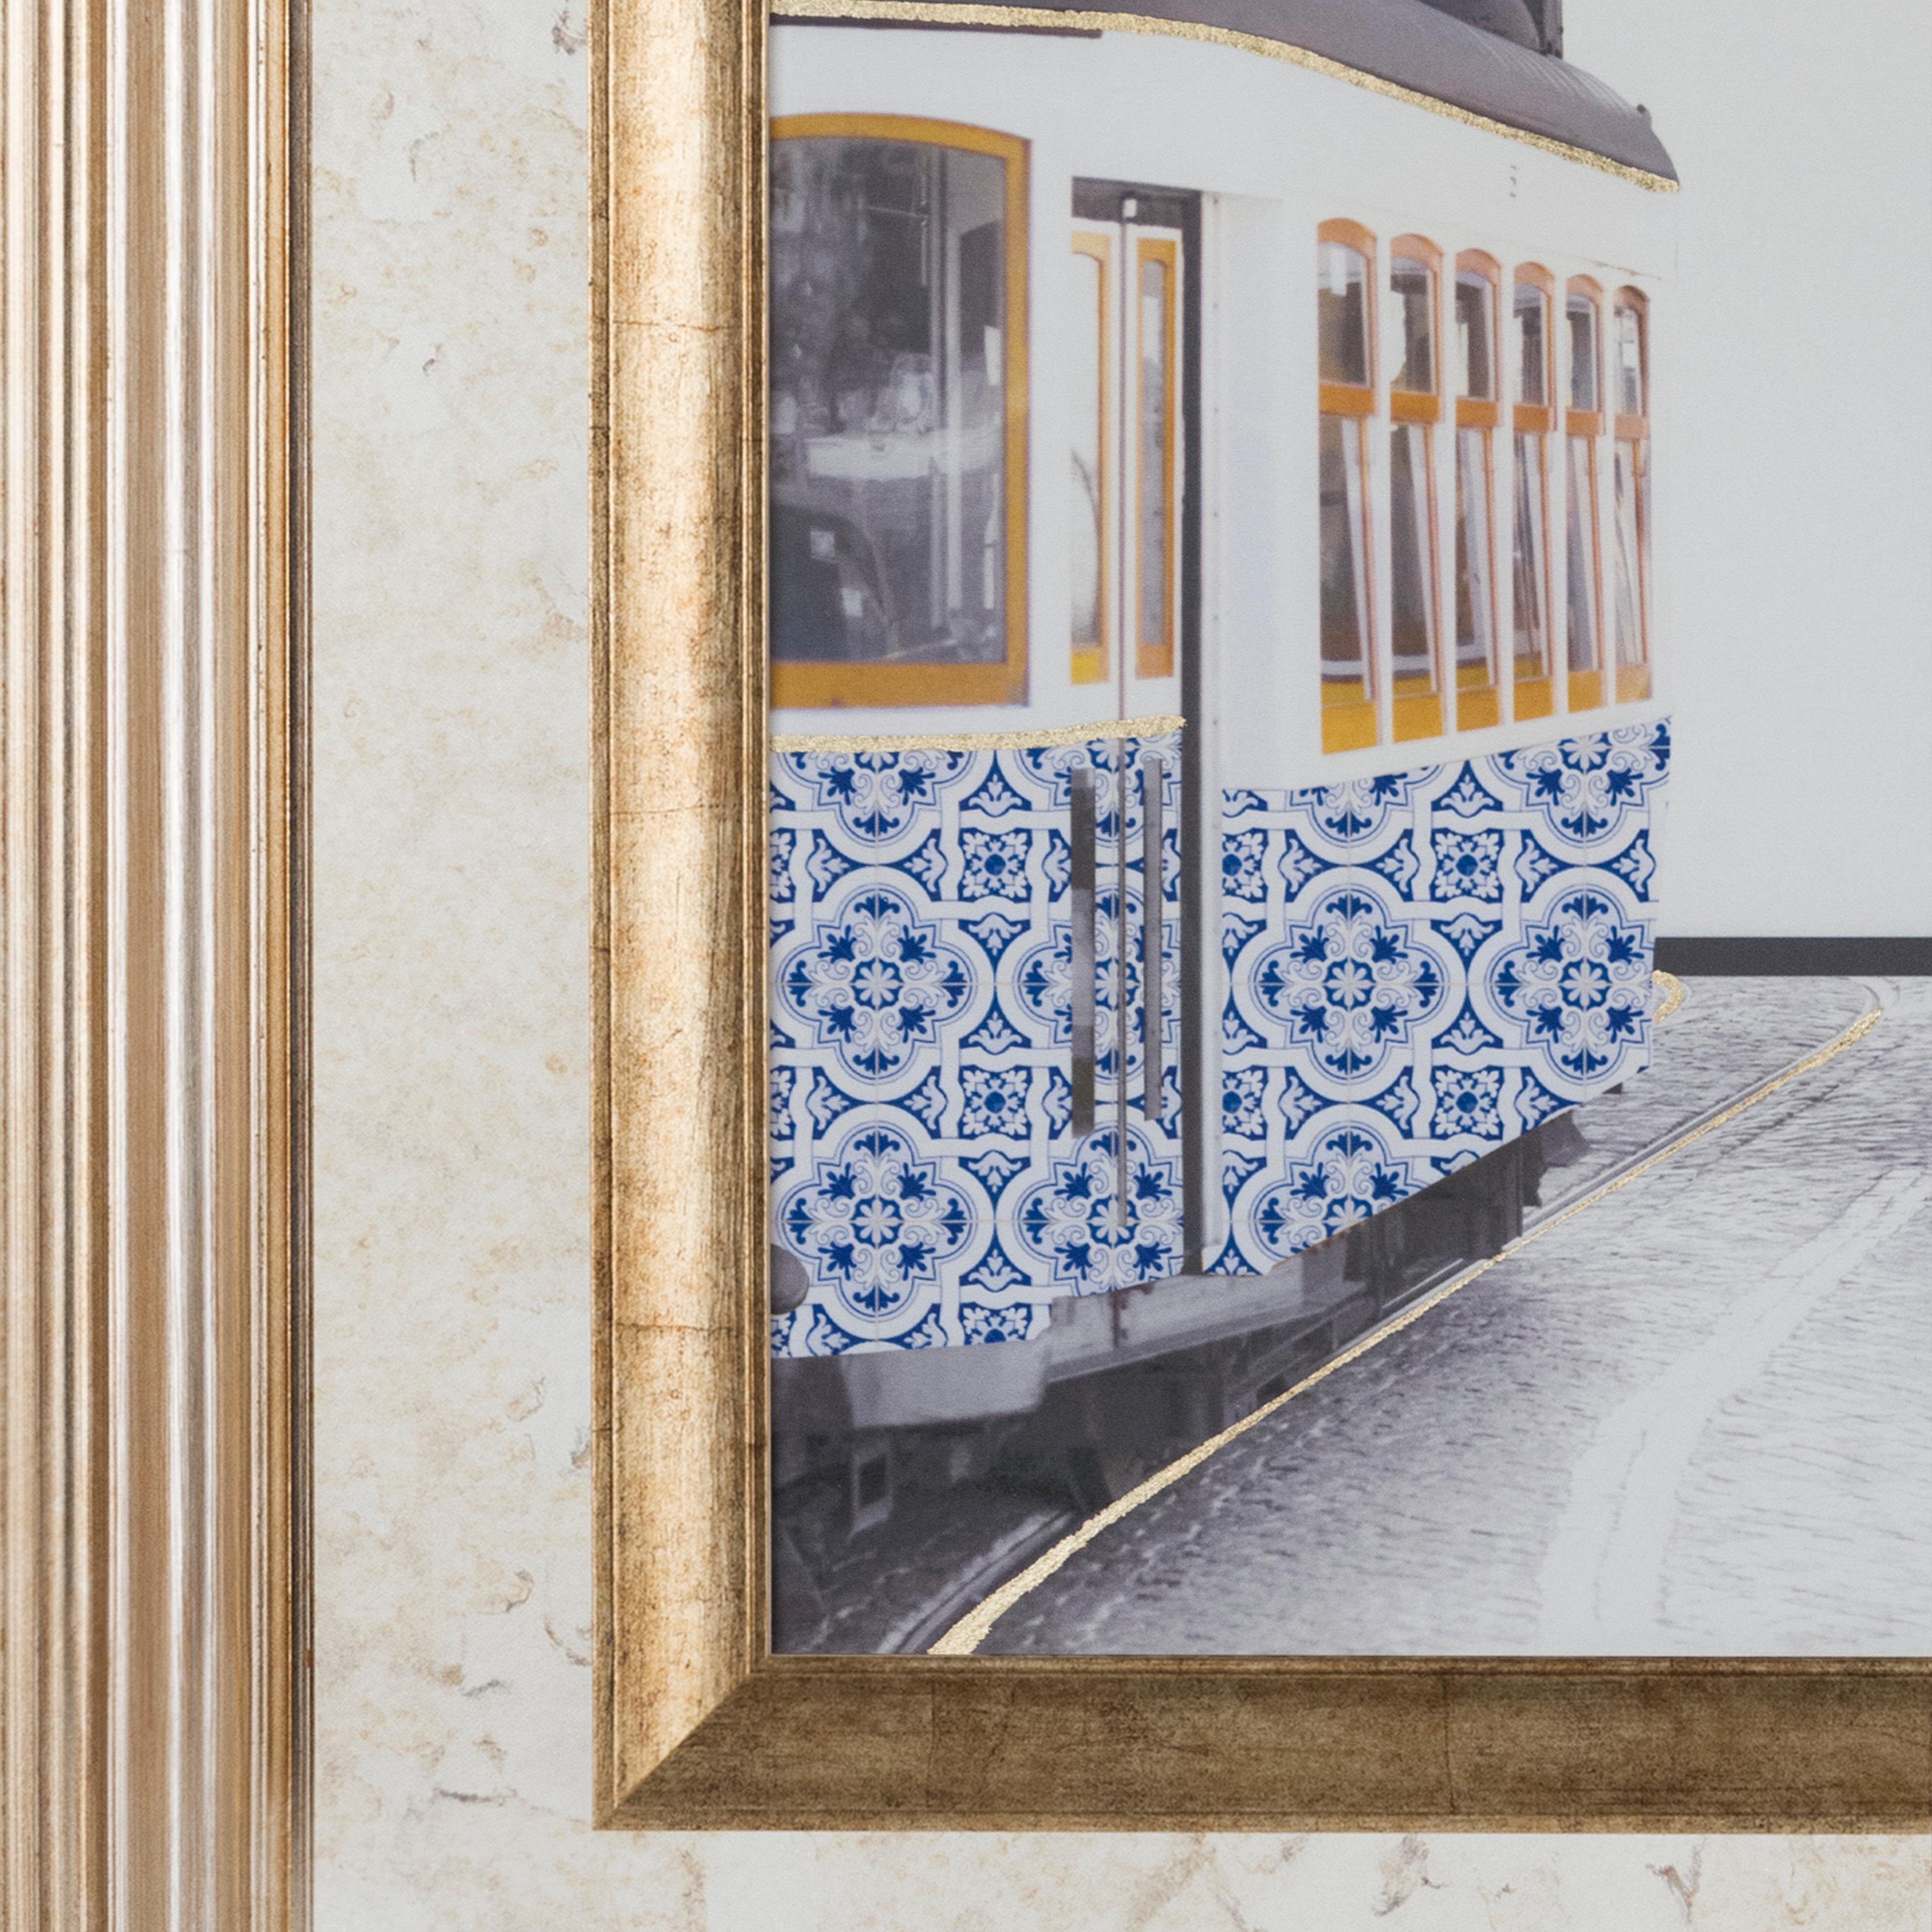 Alfama Wandkunst, Lusitanus Home Collection, Handgefertigt in Portugal - Europa von Lusitanus Home.

Das exklusive handgemalte Design von Greenapple inspiriert sich an den portugiesischen Fliesen und dem ältesten und symbolträchtigsten Viertel